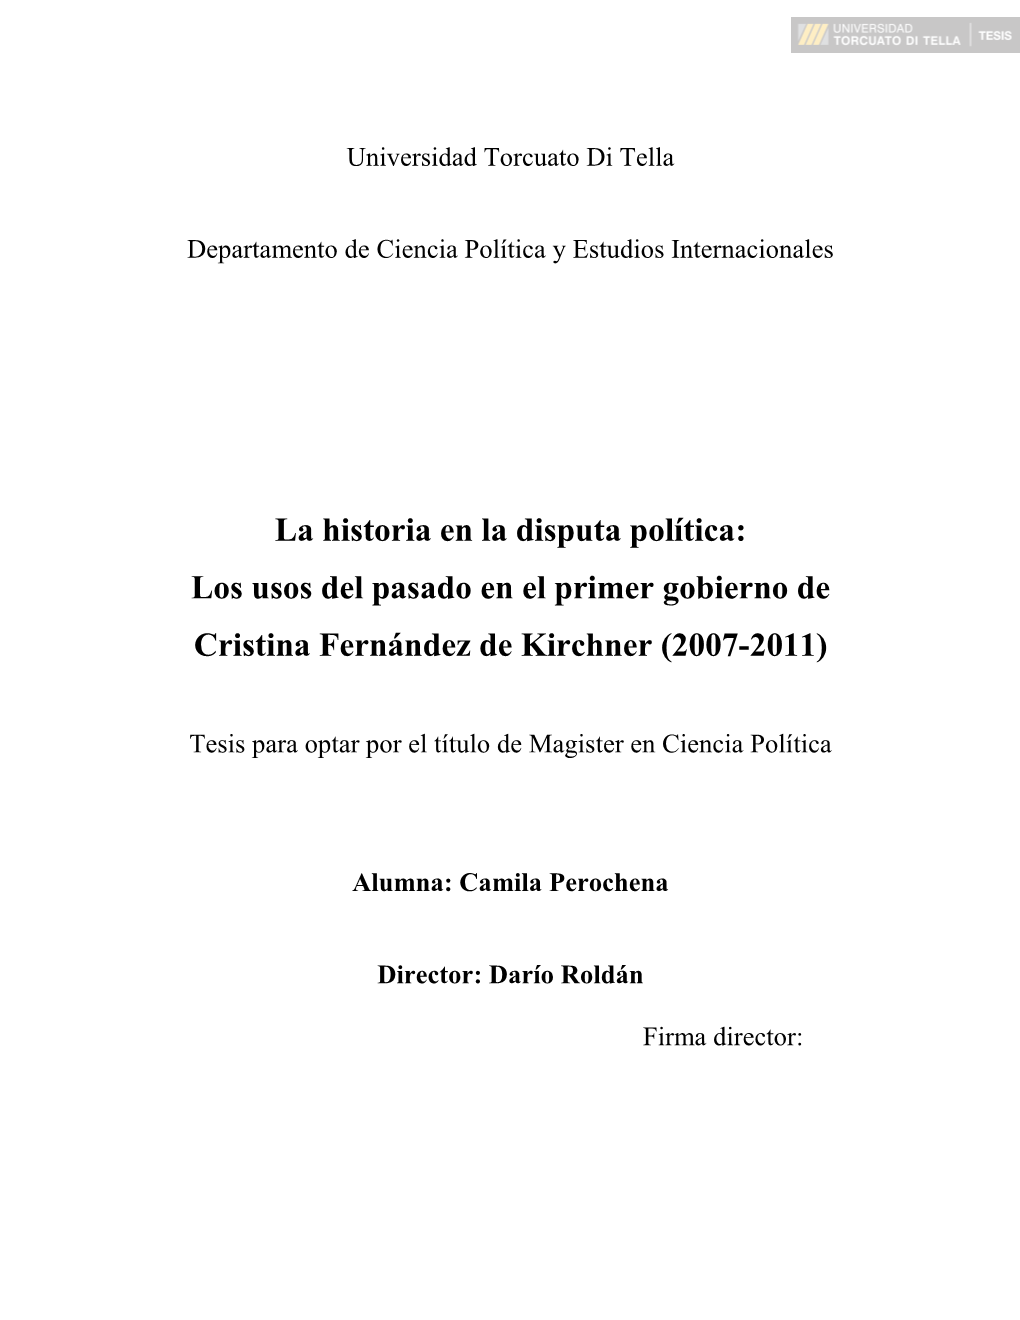 Los Usos Del Pasado En El Primer Gobierno De Cristina Fernández De Kirchner (2007-2011)